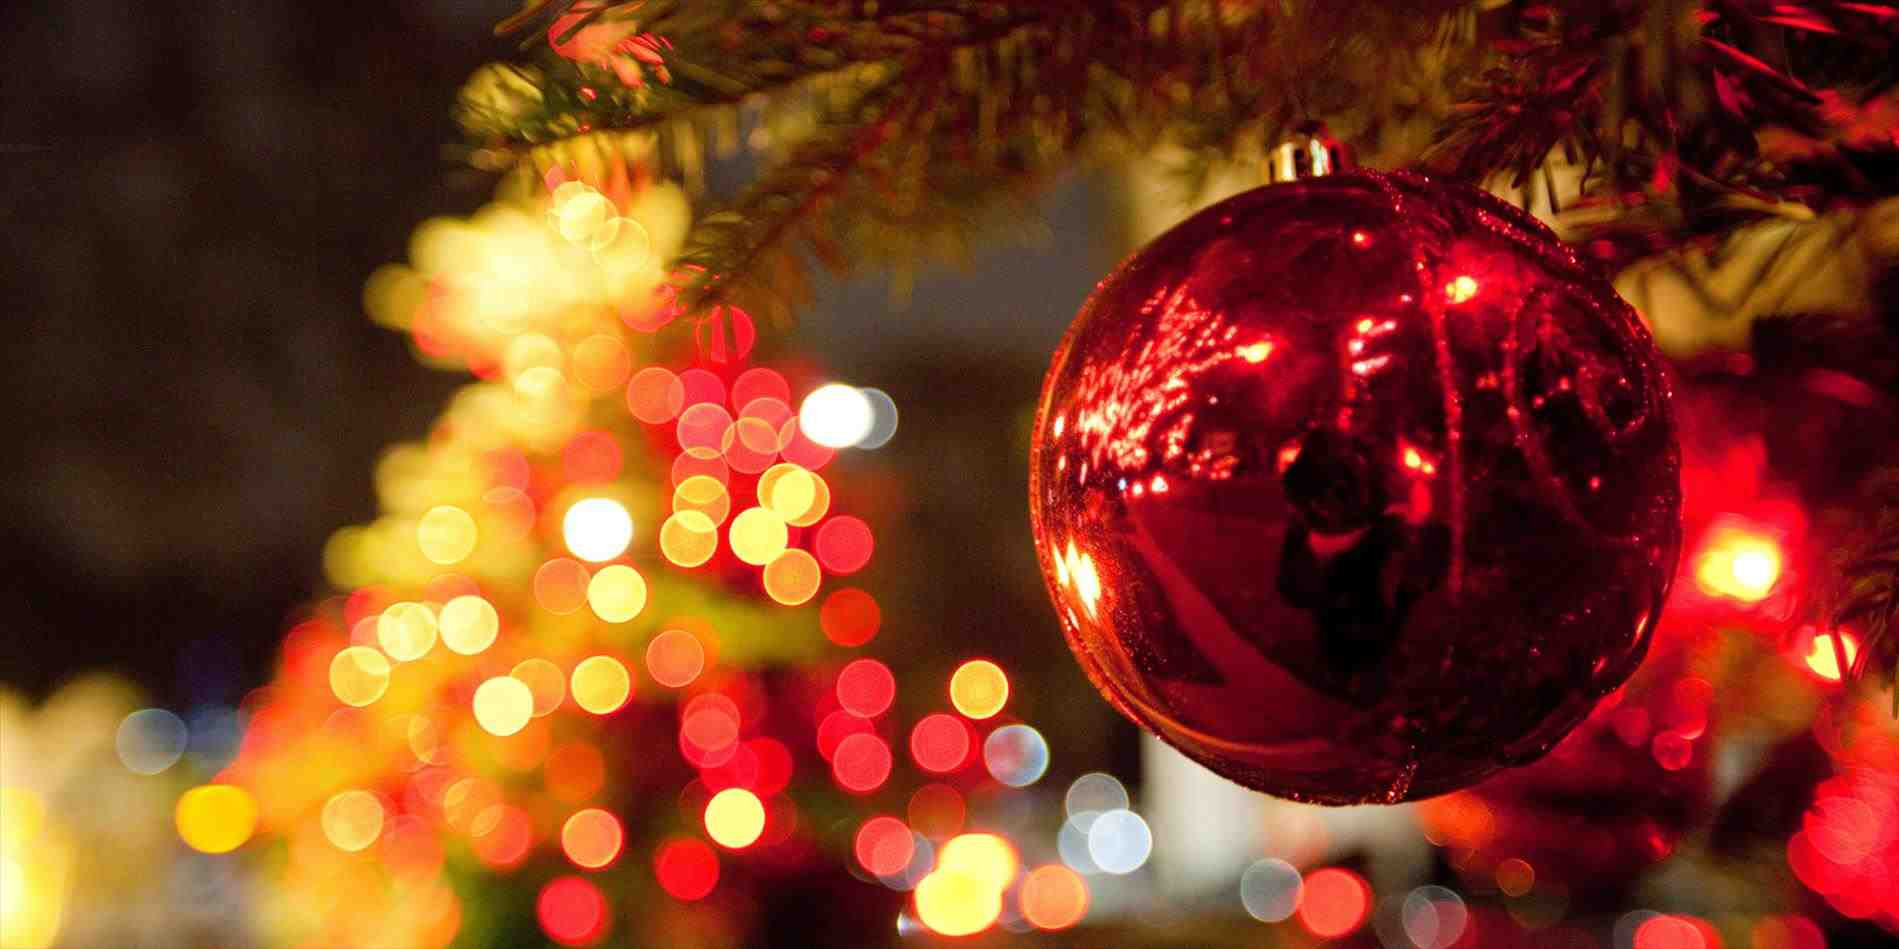 Giáng sinh đang đến rất gần, bạn đã sẵn sàng để chào đón lễ hội này trên trang Facebook của mình chưa? Nếu chưa, hãy cùng xem ngay những ảnh bìa Giáng sinh/Noel tuyệt đẹp để lựa chọn cho mình một bức hình ấn tượng nhất.